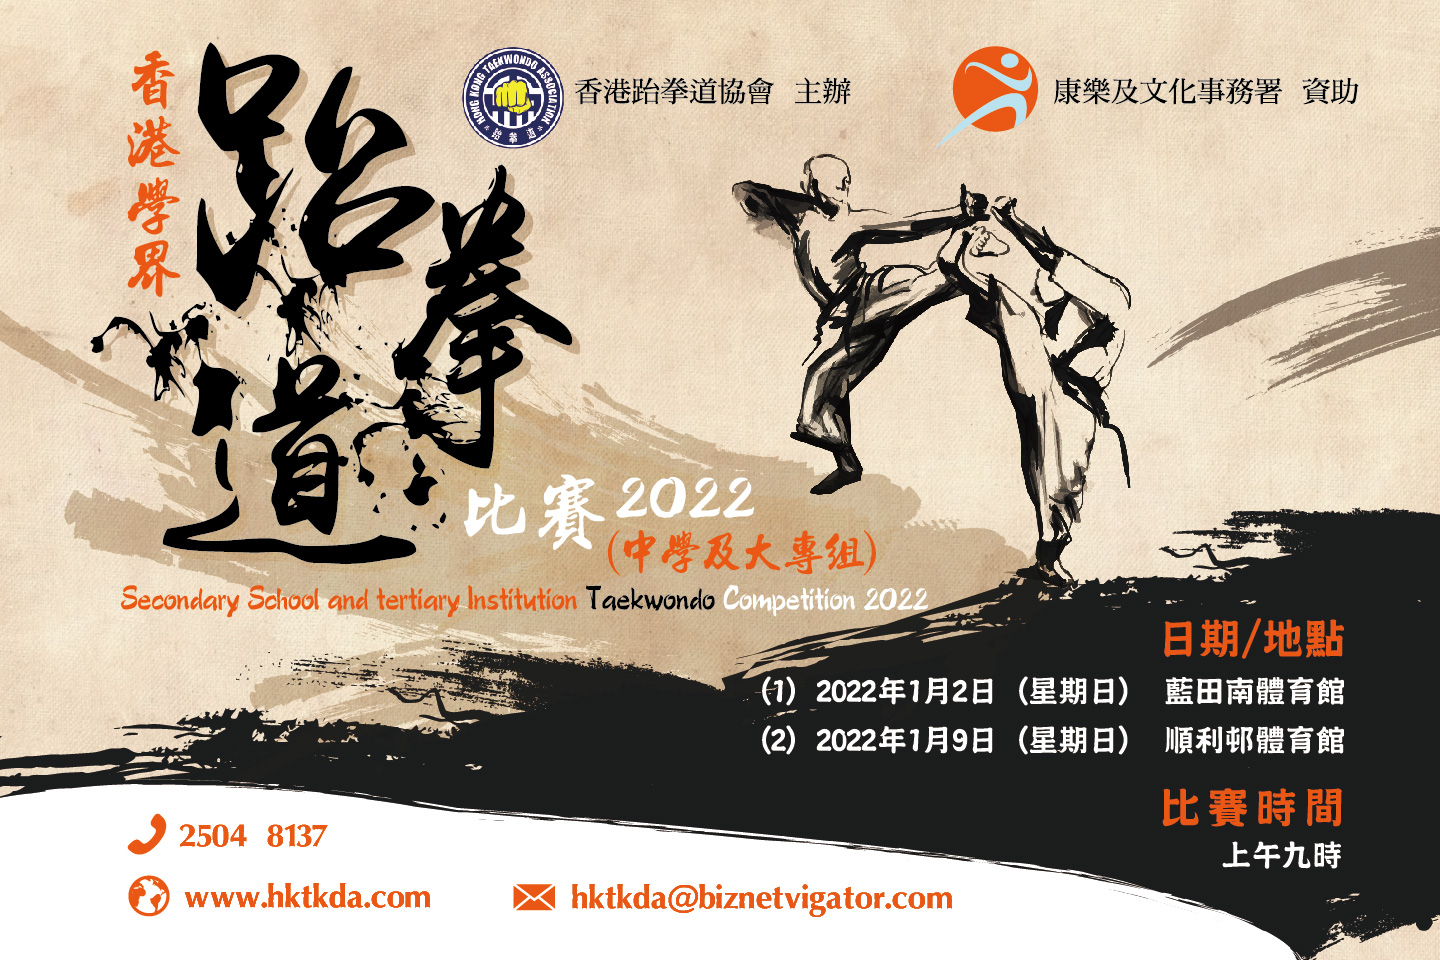 有關延期舉辦「香港學界跆拳道比賽2022(中學及大專組)」事宜